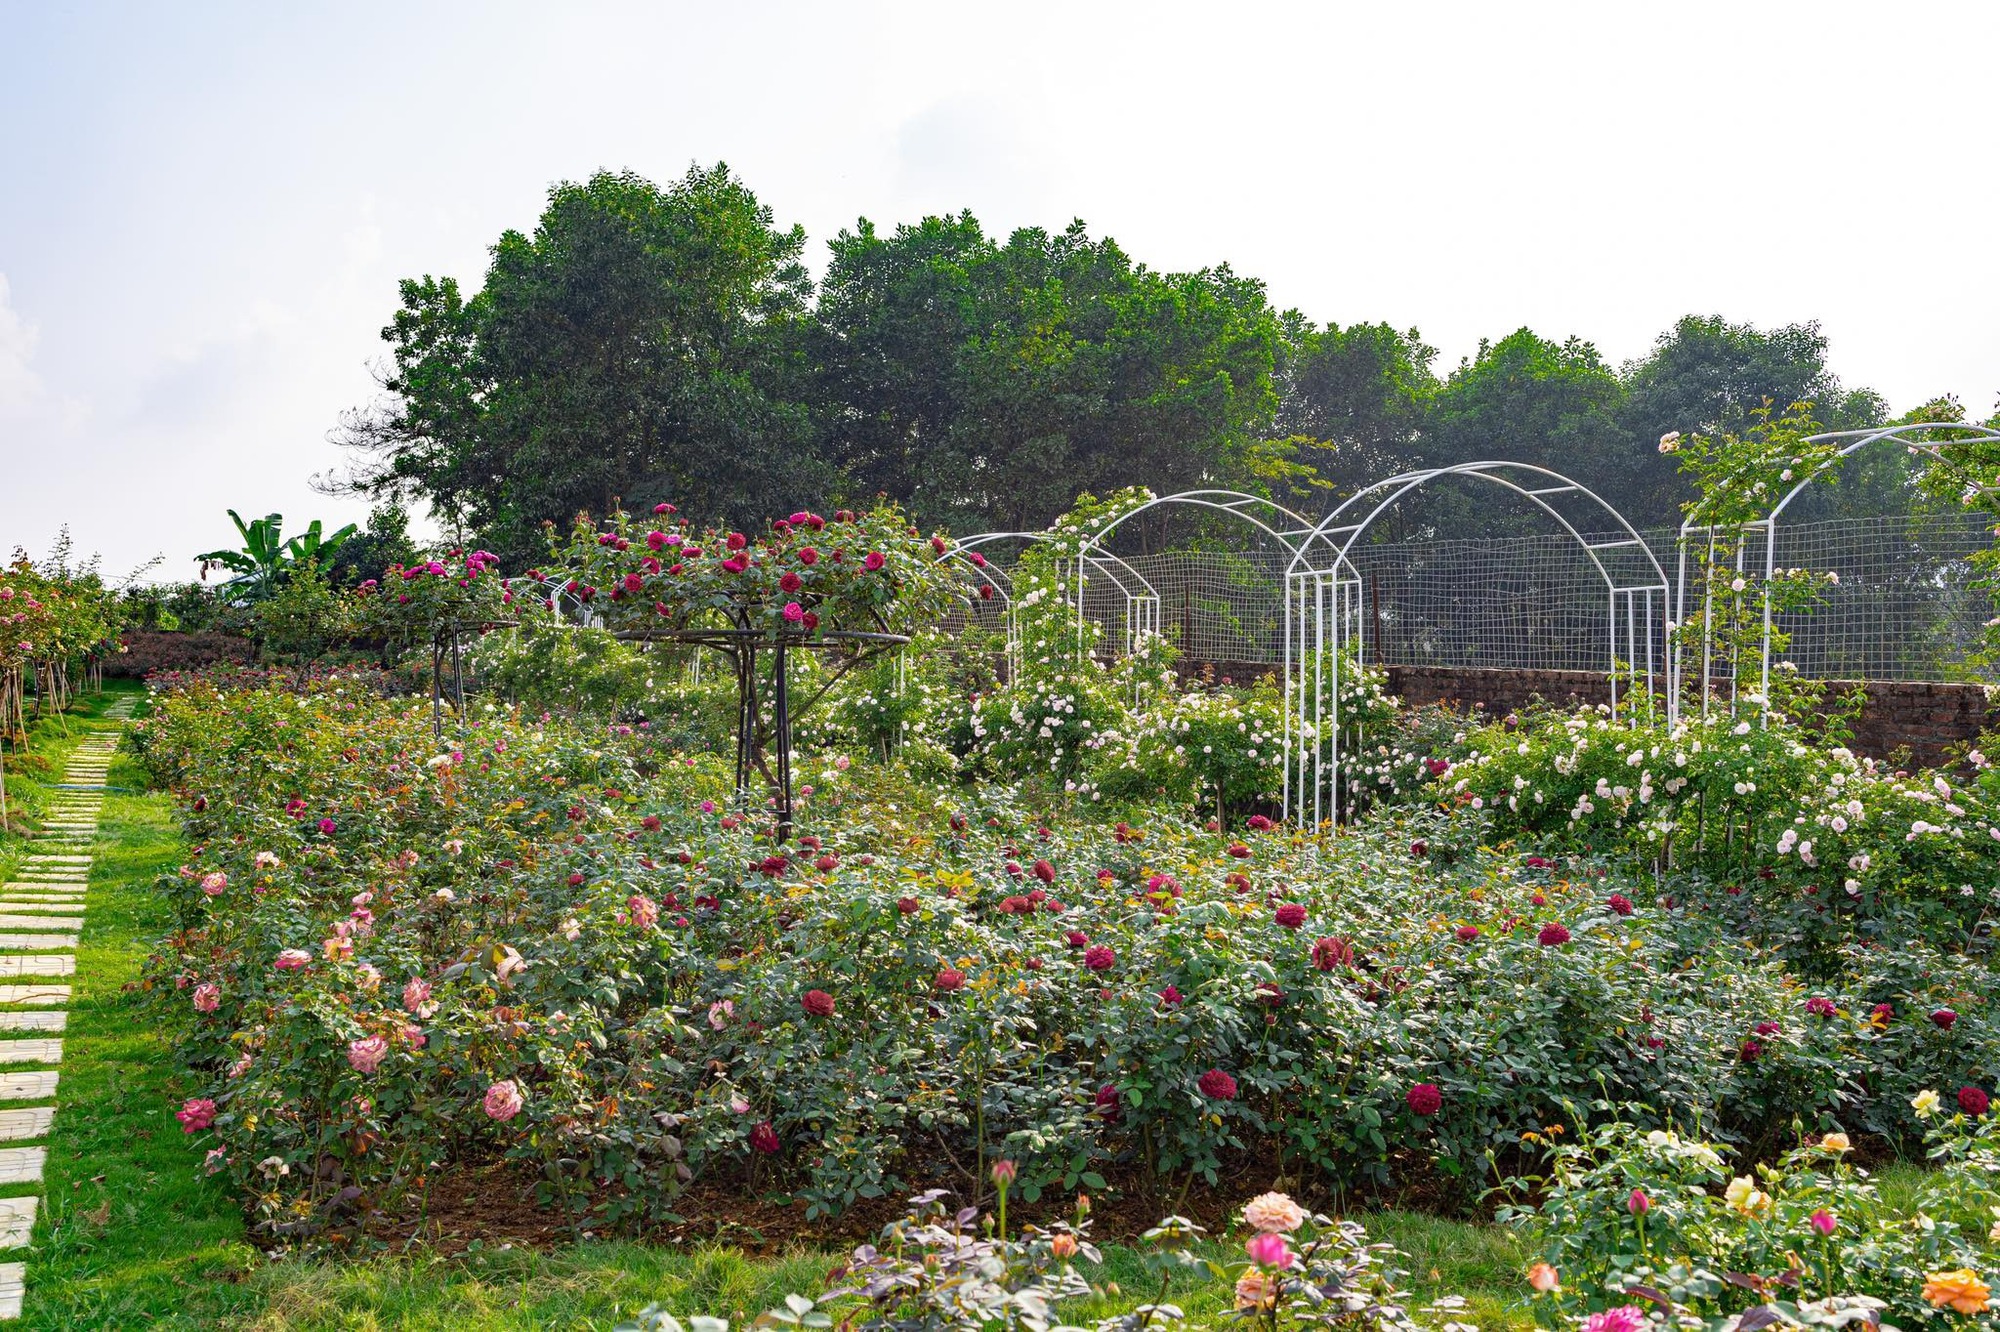 Mùng 3 Tết đến thăm vườn hồng rộng 6.000m² của người phụ nữ Hà Nội - Ảnh 8.